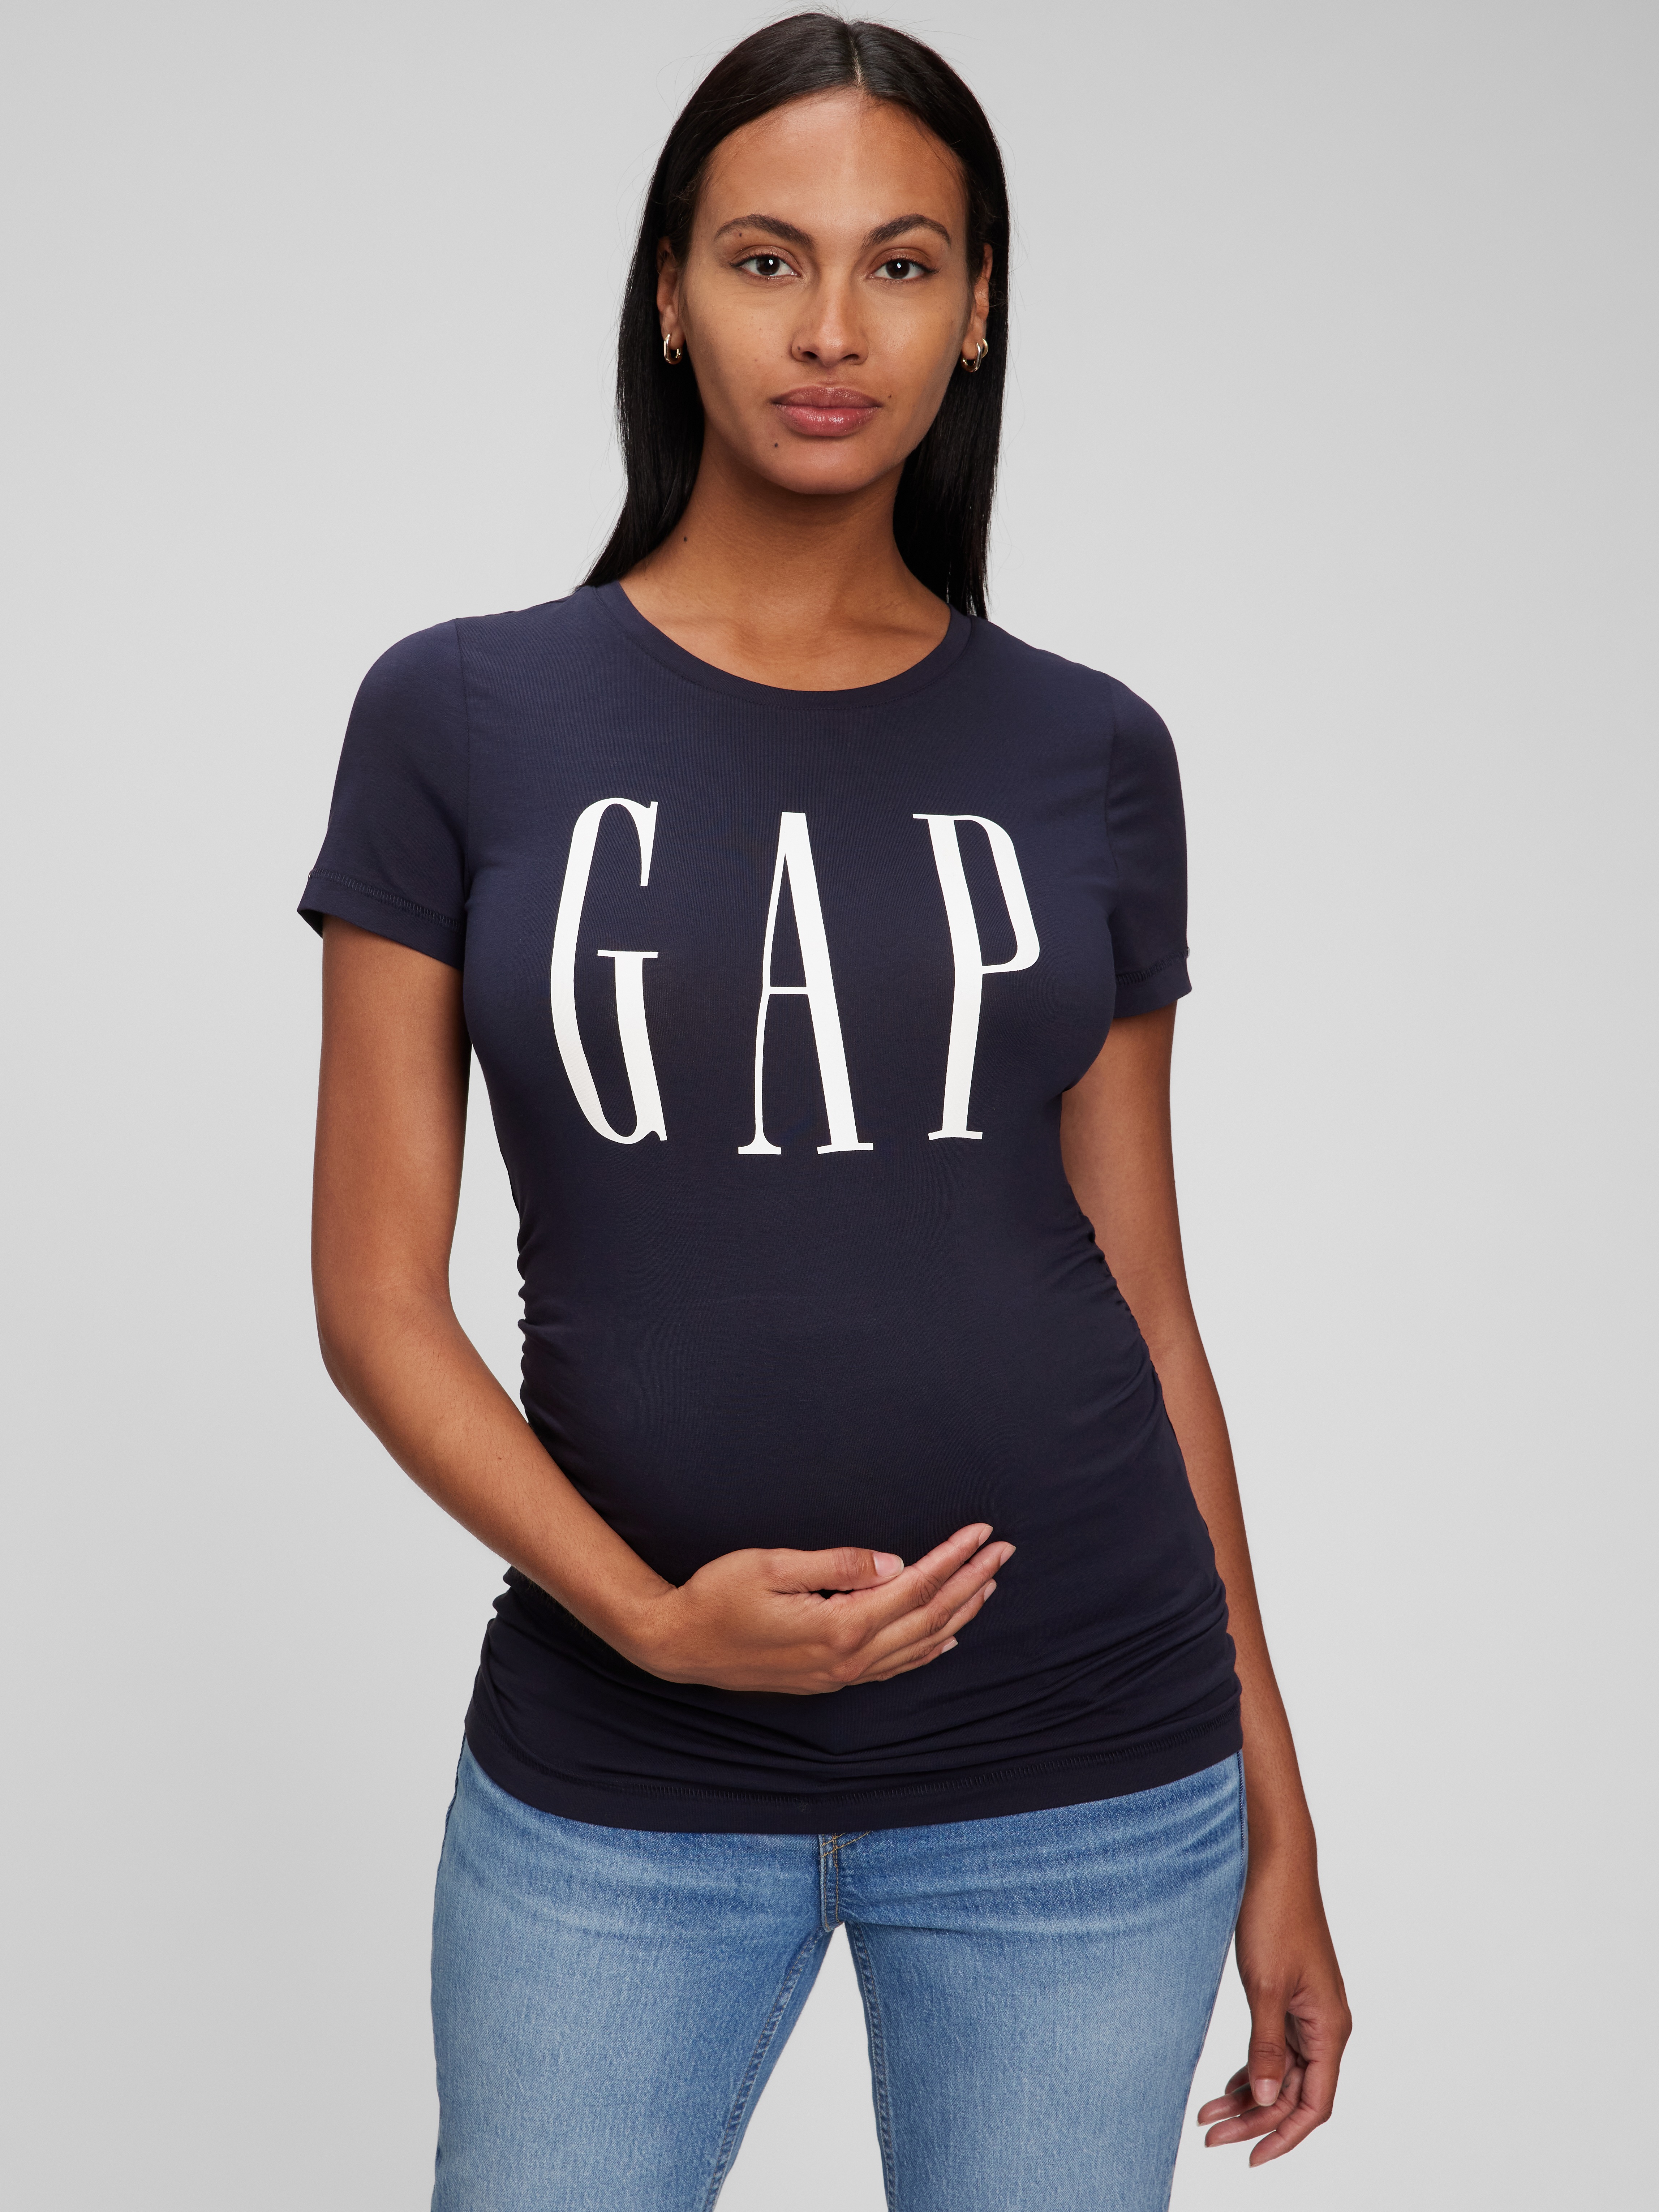 Gap Maternity Graphic Tee Shirt Top XS S M L XL XXL NEW 